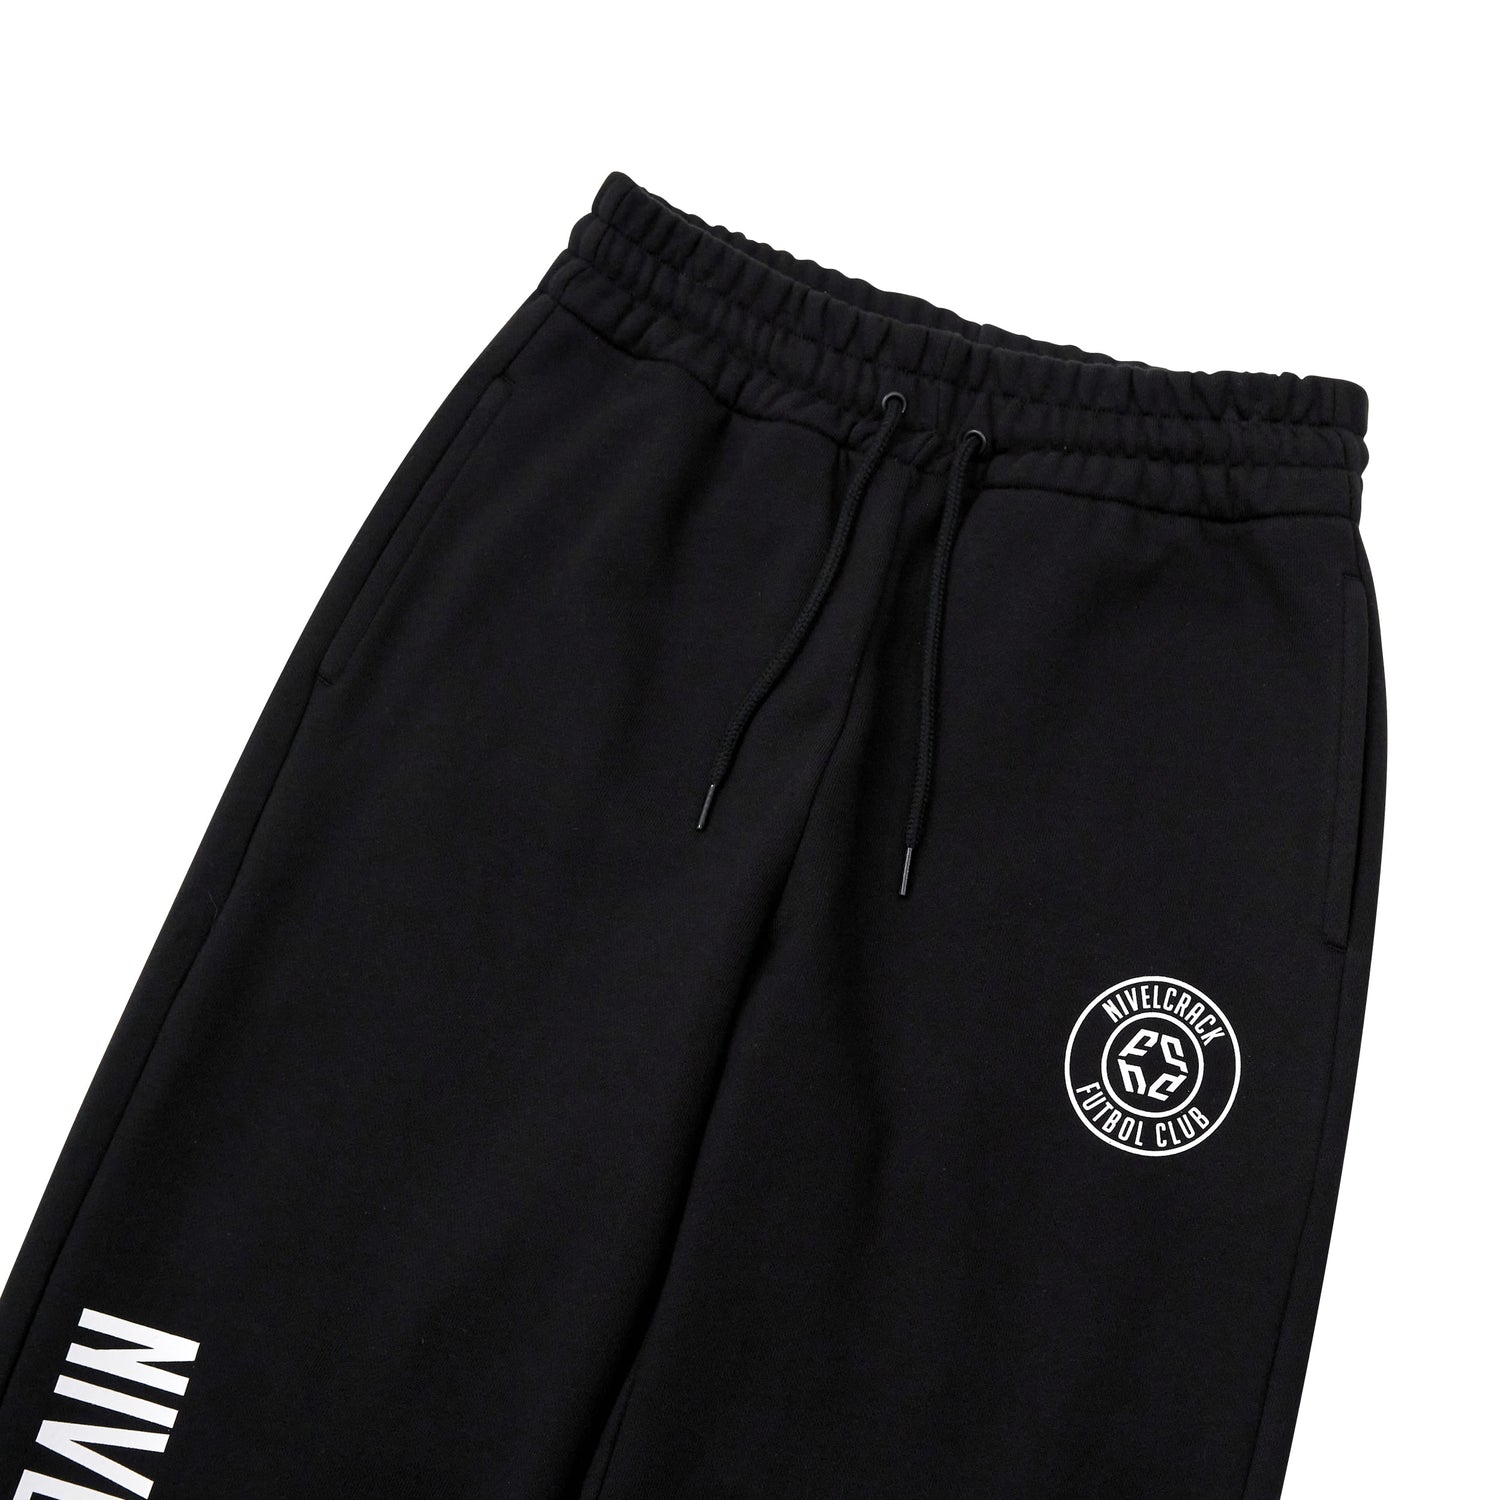 Nivelcrack OG Squad Sweatpants - Black